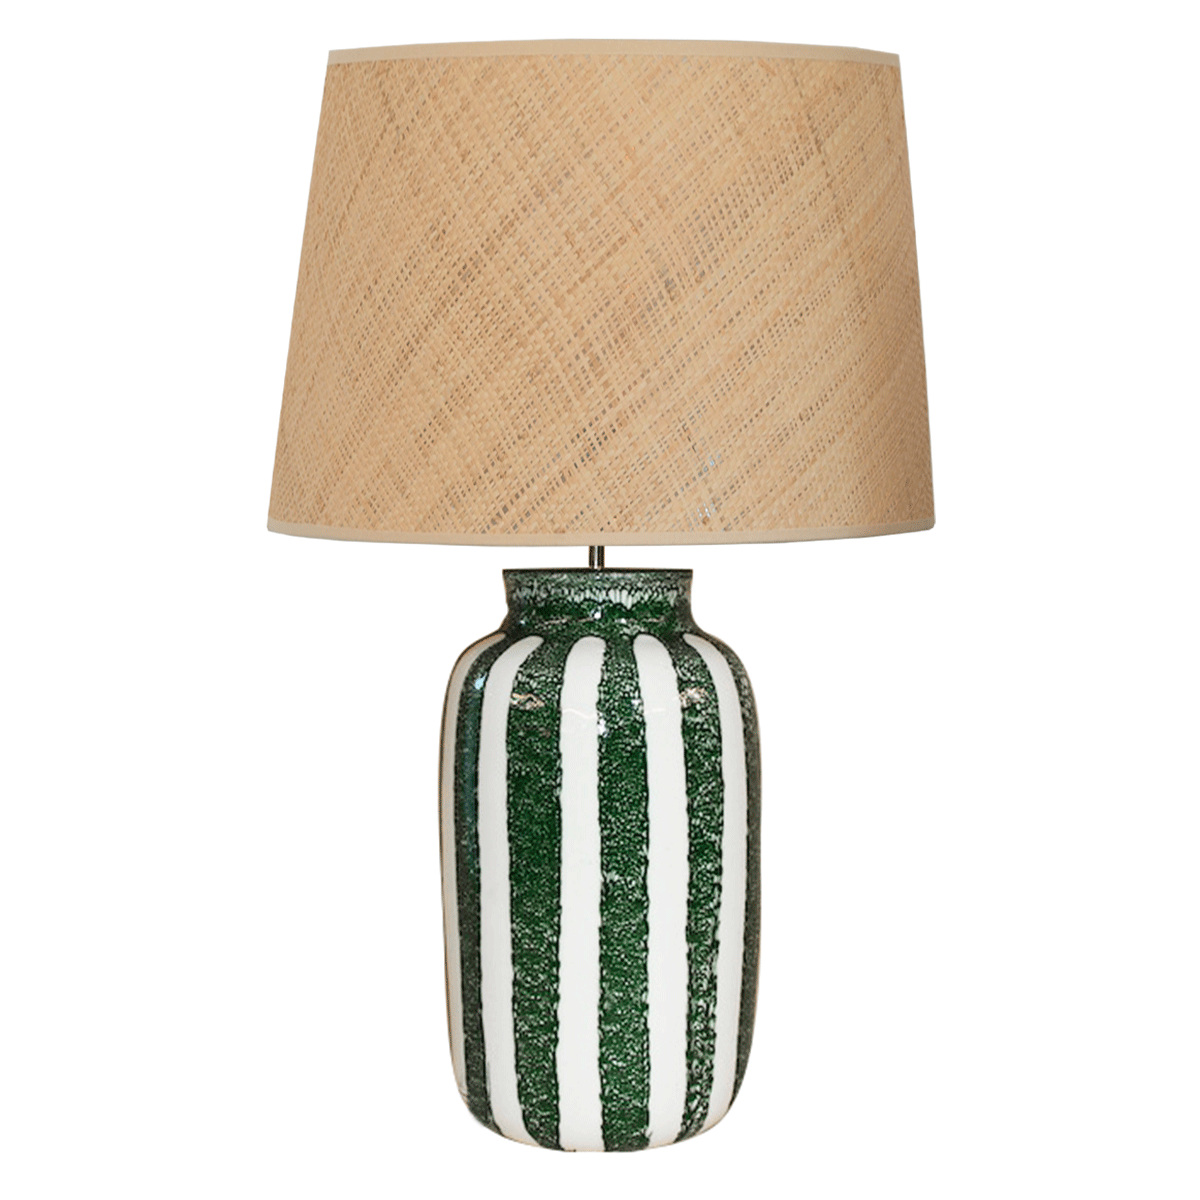 Lamp Palmaria, Green - H59 cm - Ceramic / Rabane lampshade - image 1